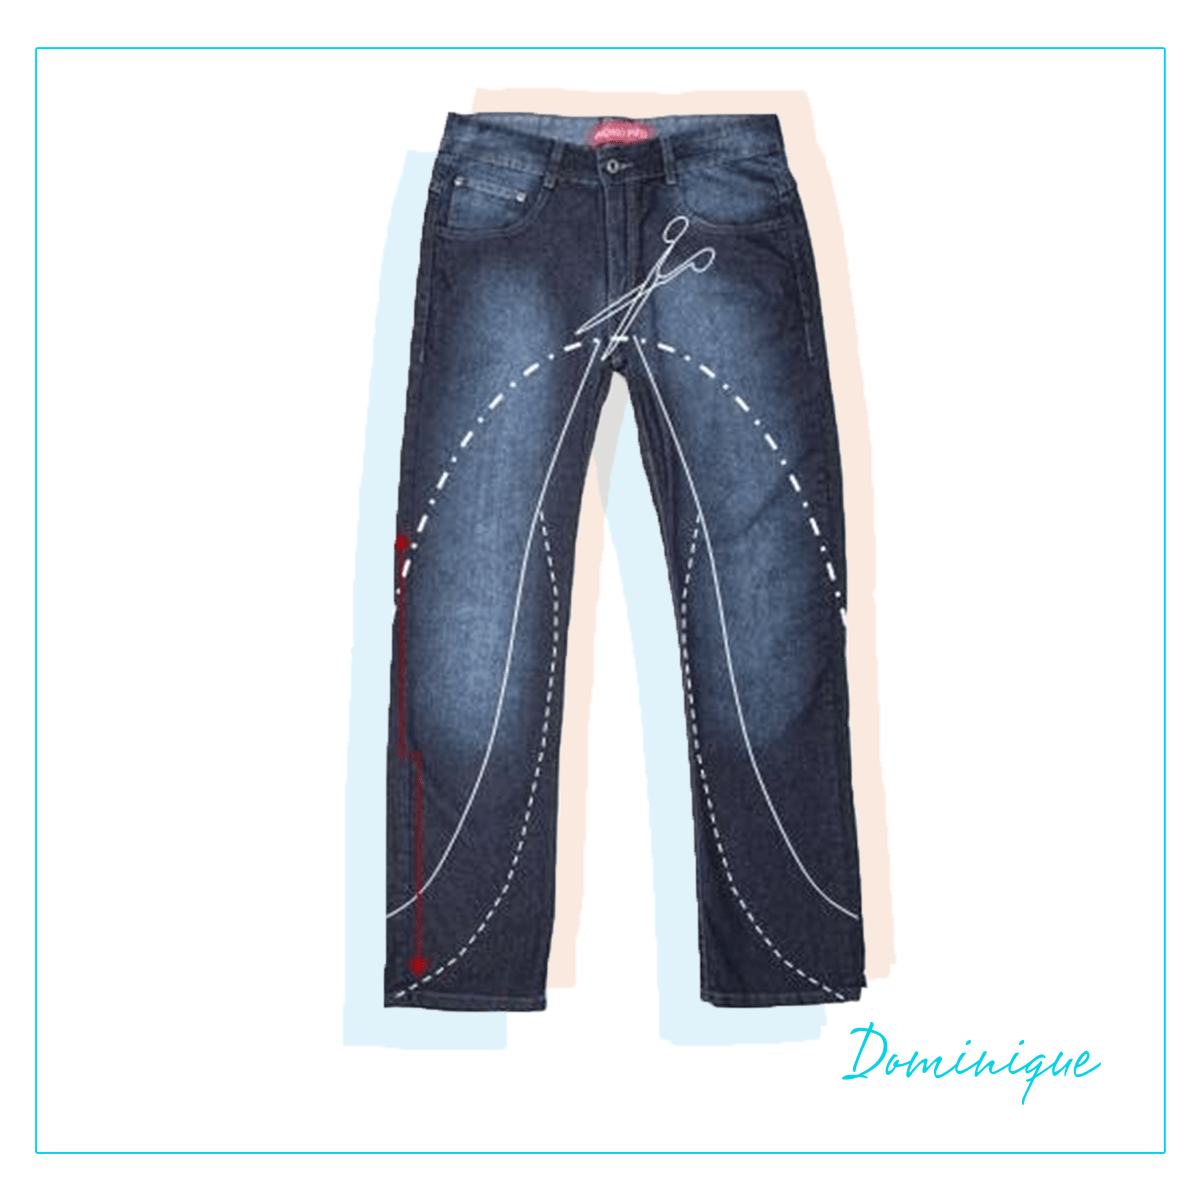 Dominique - calça jeans